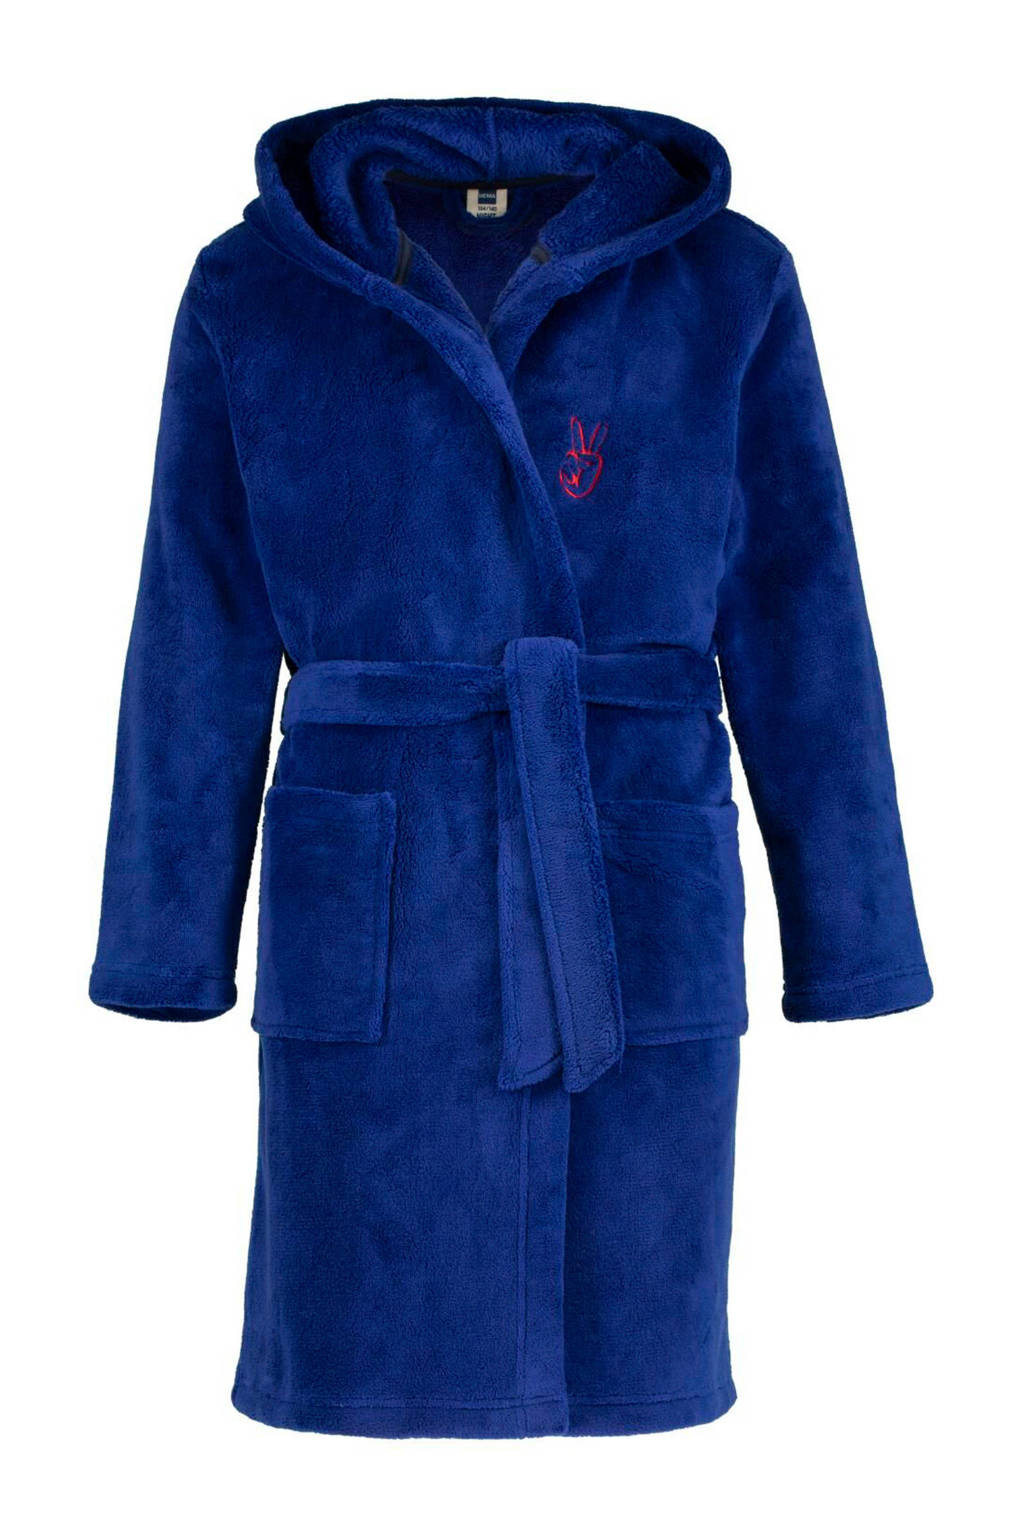 Postcode bron gevolgtrekking HEMA fleece badjas blauw kopen? | Morgen in huis | wehkamp